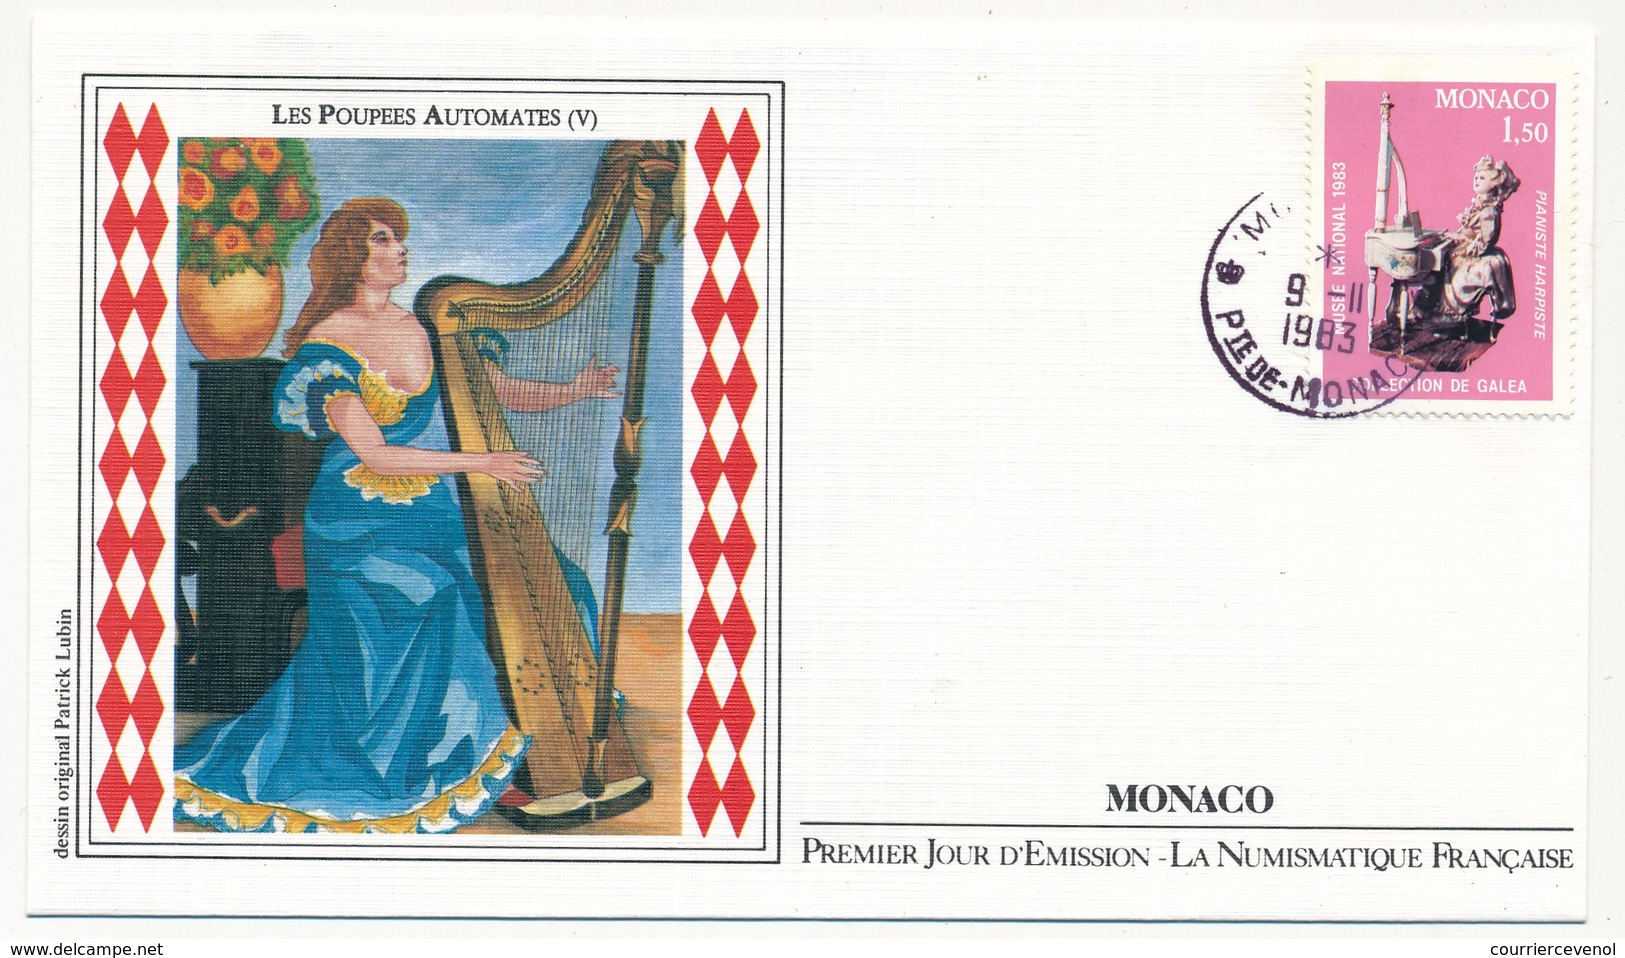 MONACO => 5 Enveloppes FDC - Les Poupées Automates - Premier Jour 1983 - FDC